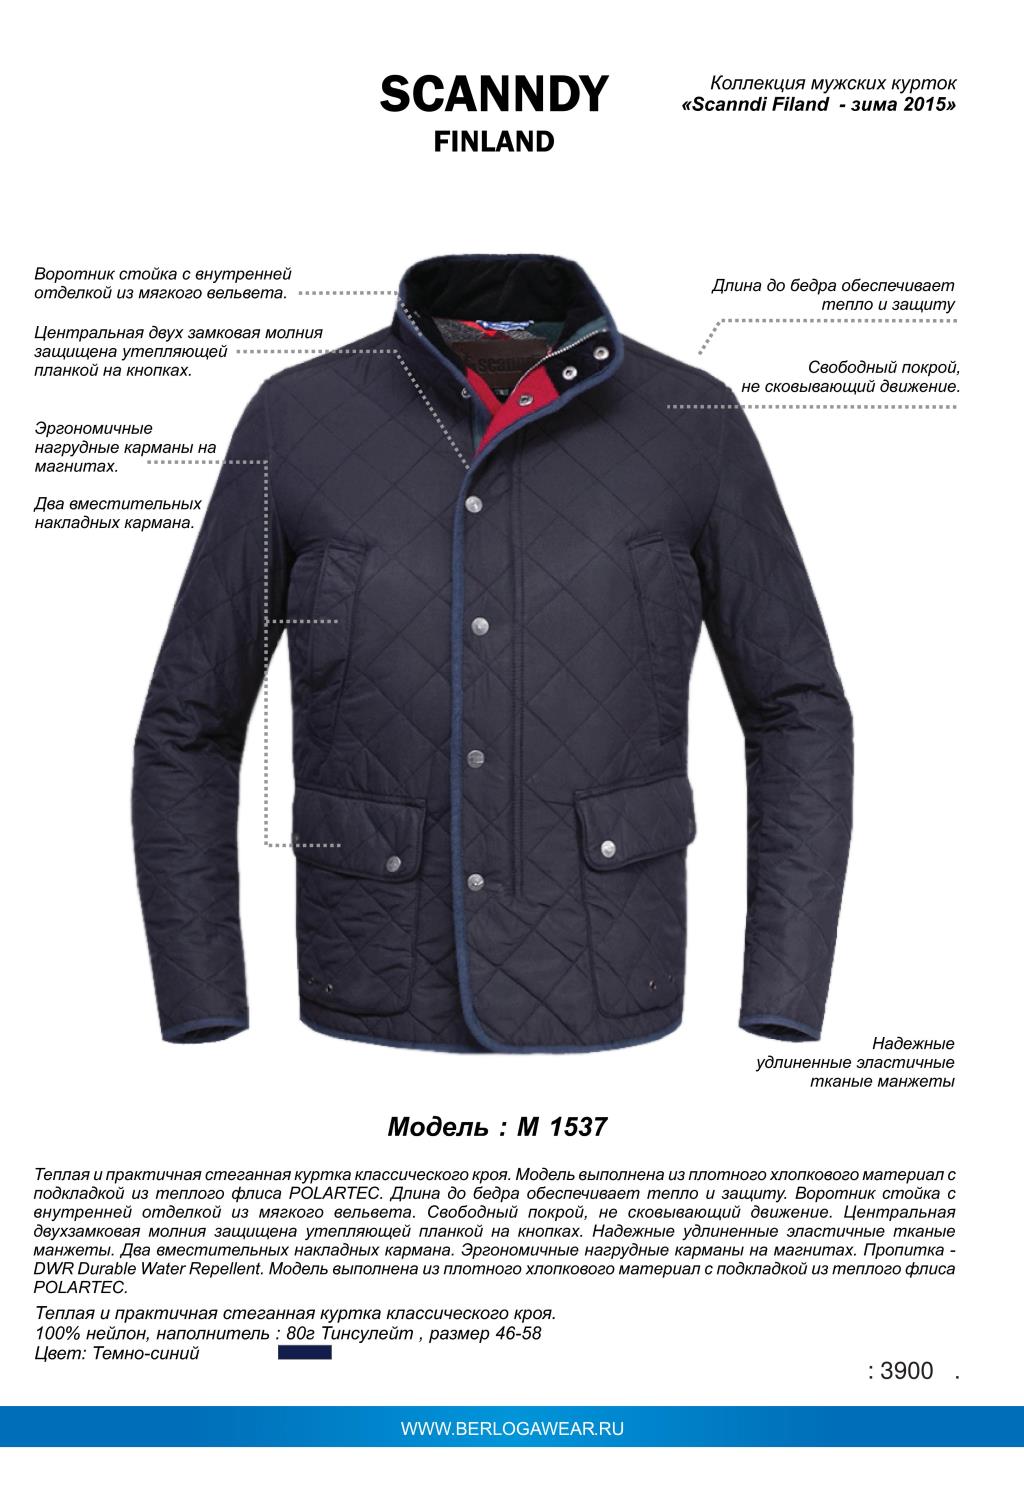 Куртка мужская 46 размера. Ginmerlin куртки мужские модель 7808. Финская куртка мужская. Финская фирма куртки мужские. Бренды финских зимних мужских курток.